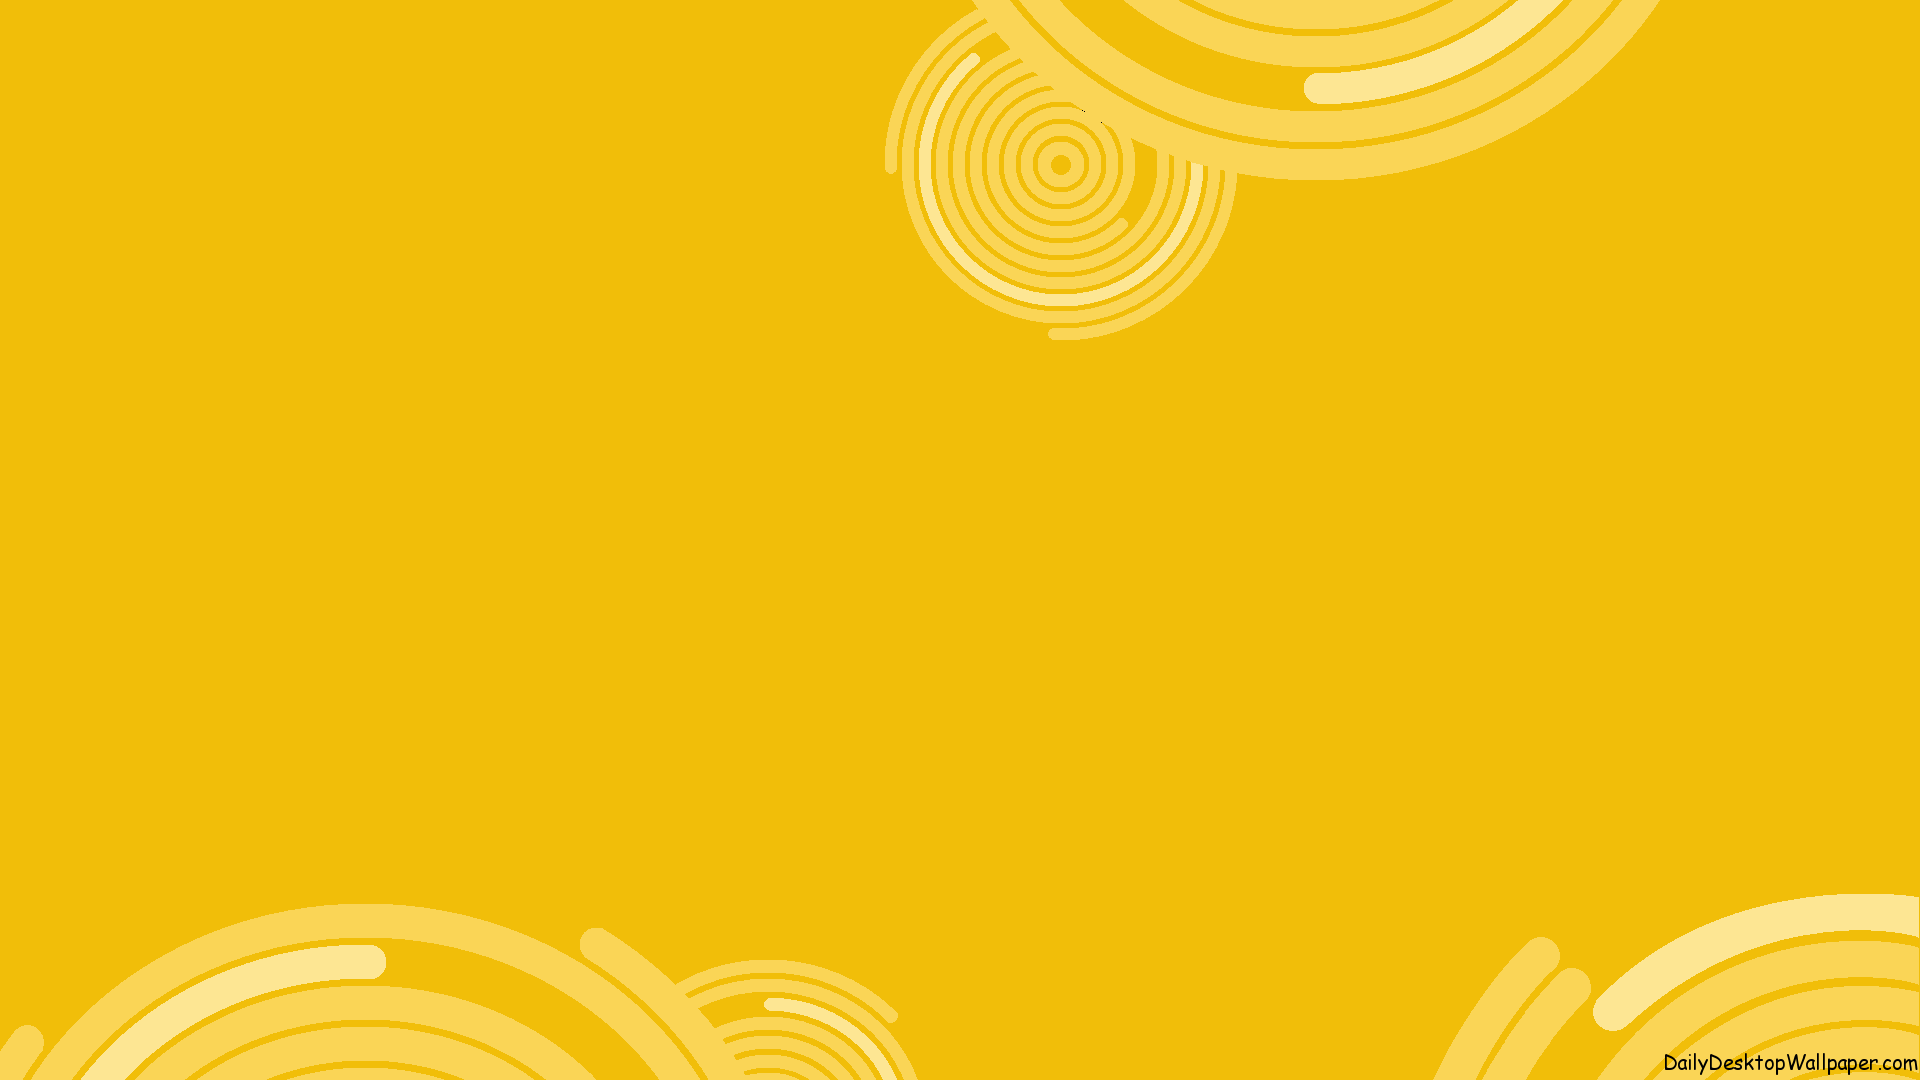 Circles of Yellow